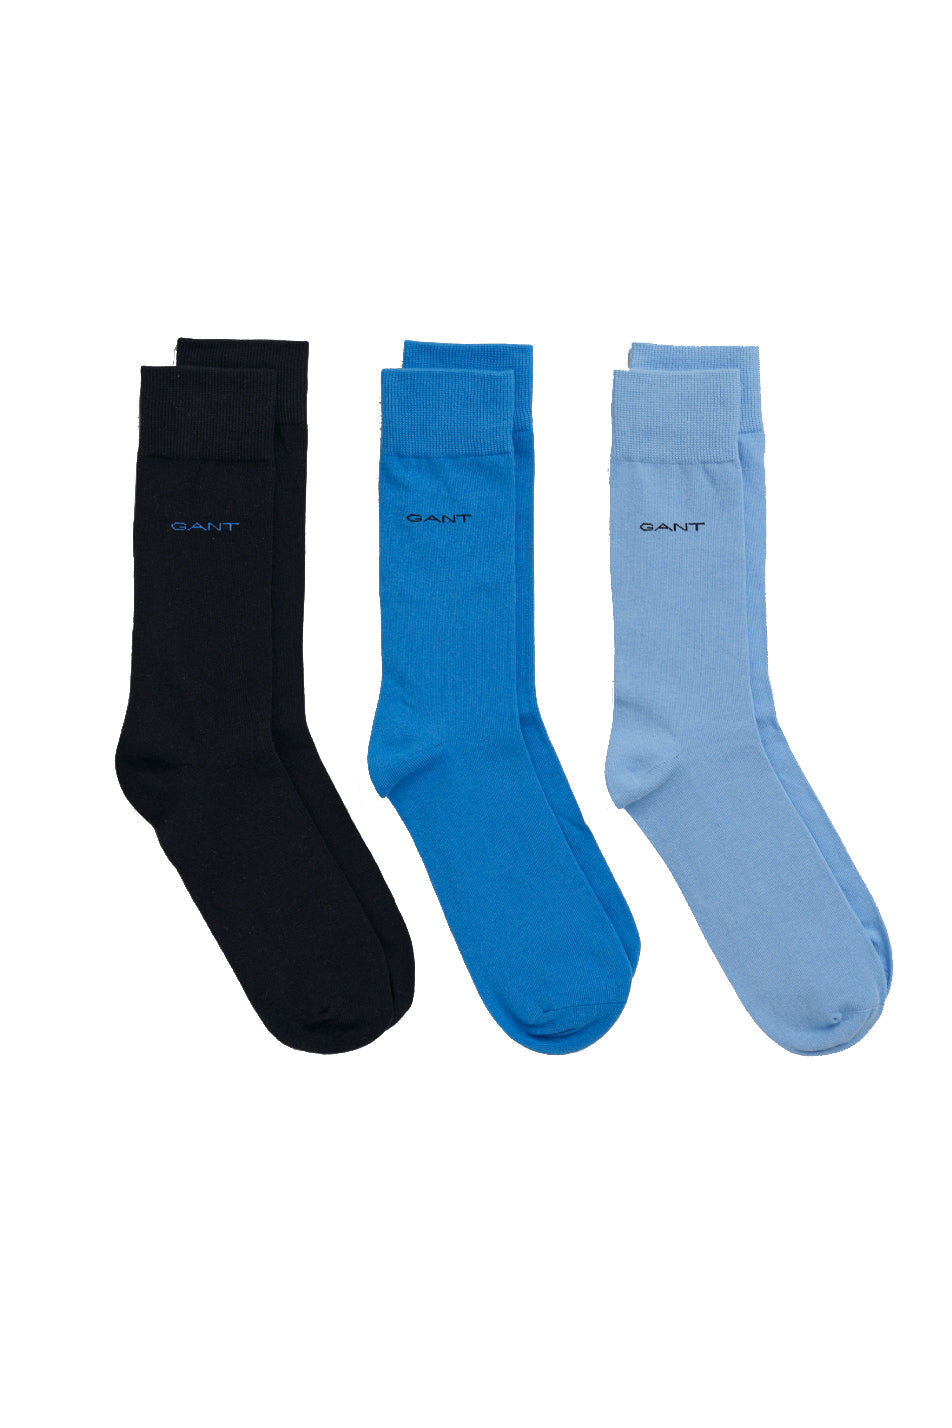 Gant 3 Pack Men's Soft Cotton Socks